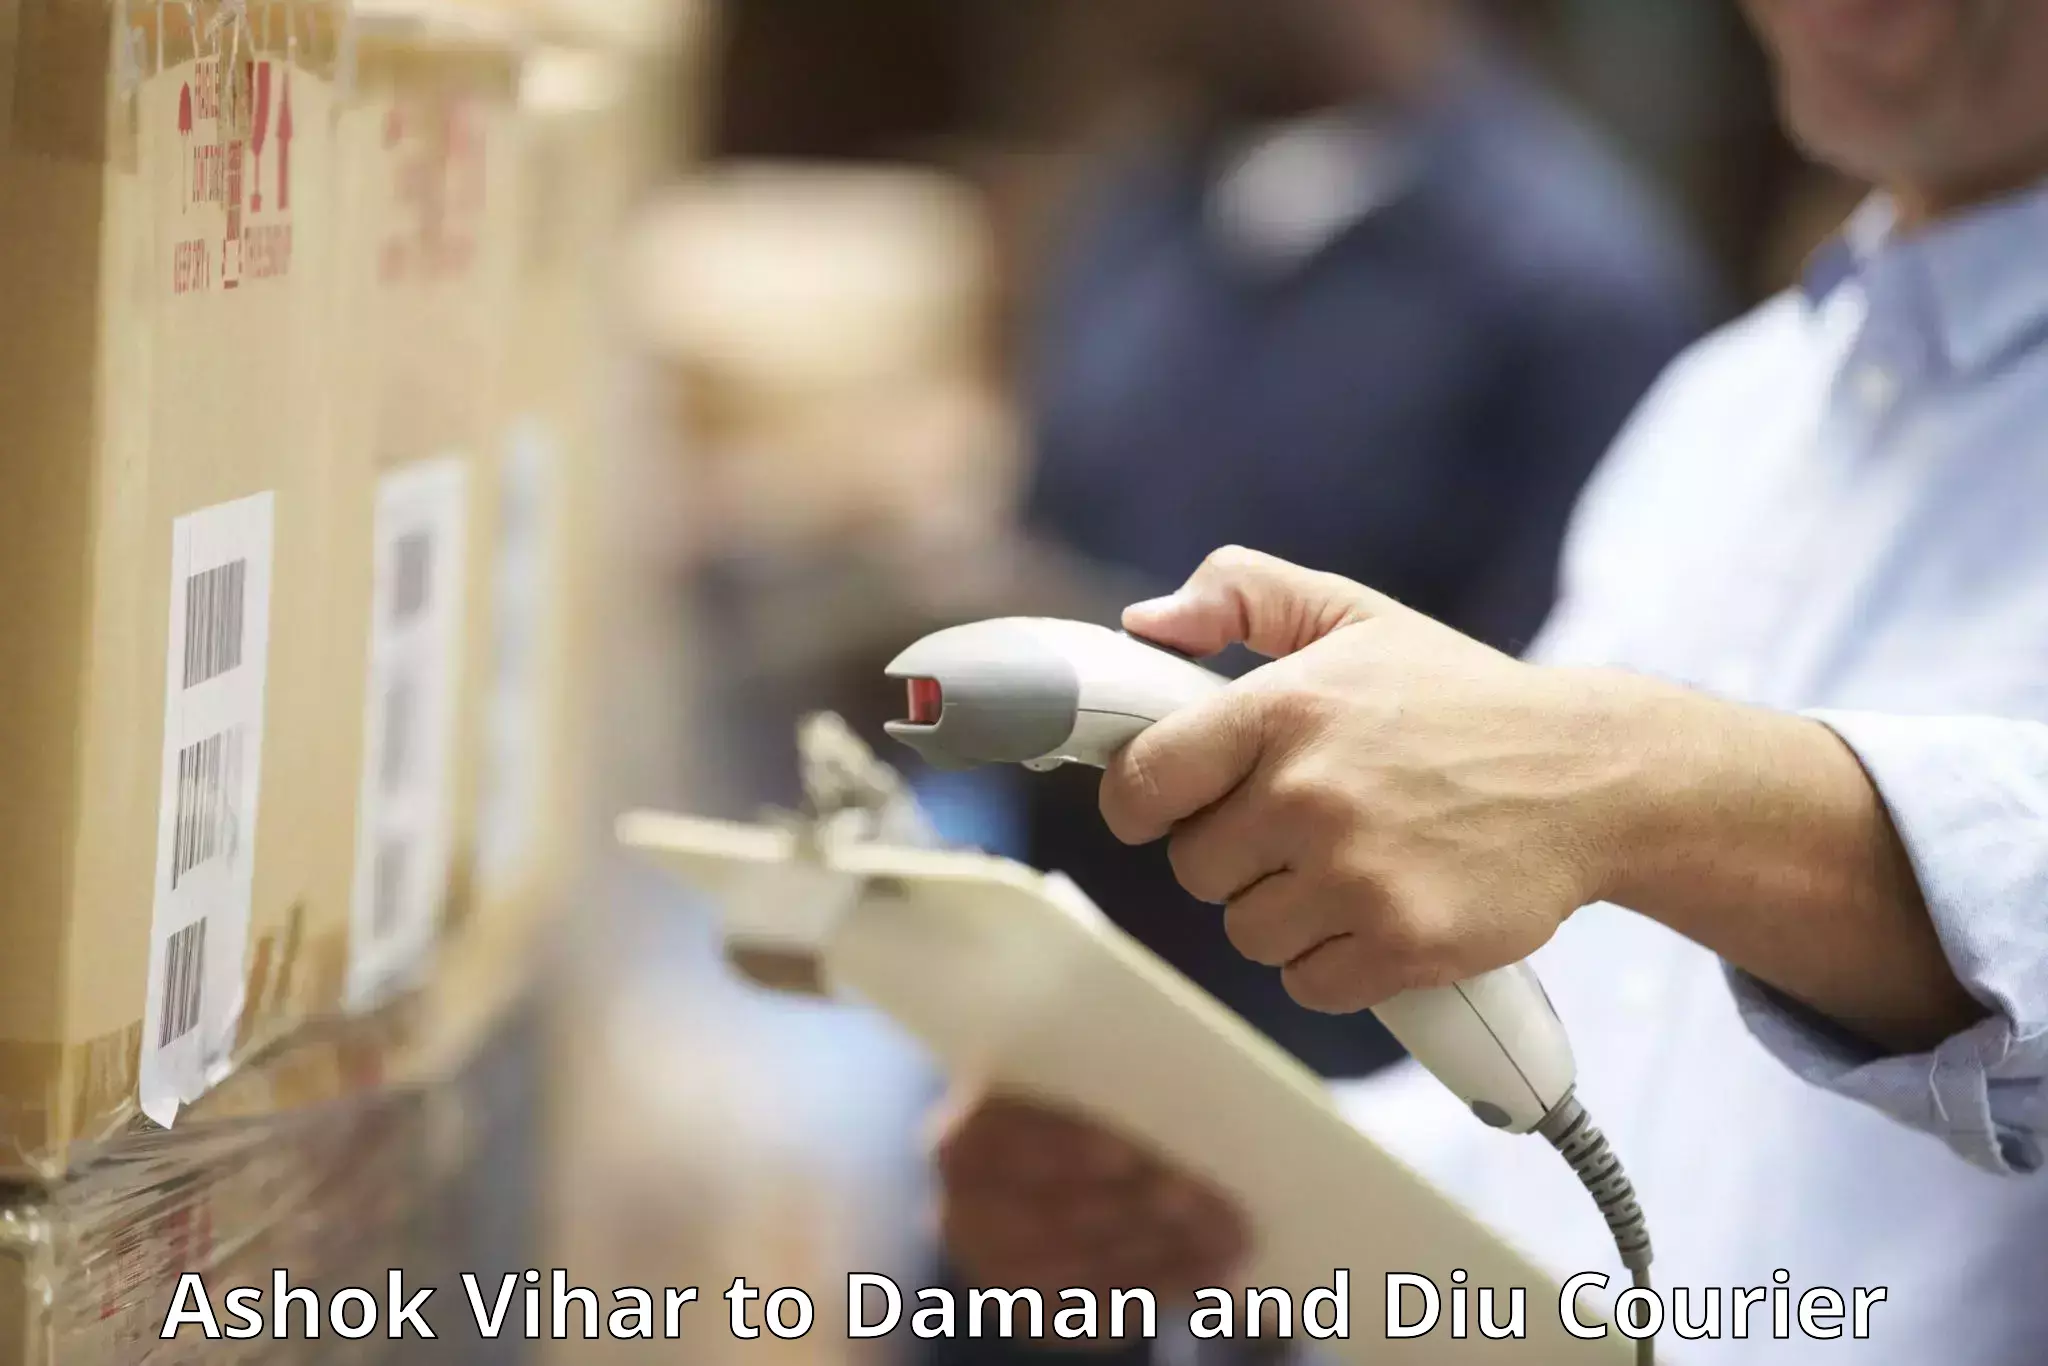 Luggage delivery app Ashok Vihar to Daman and Diu